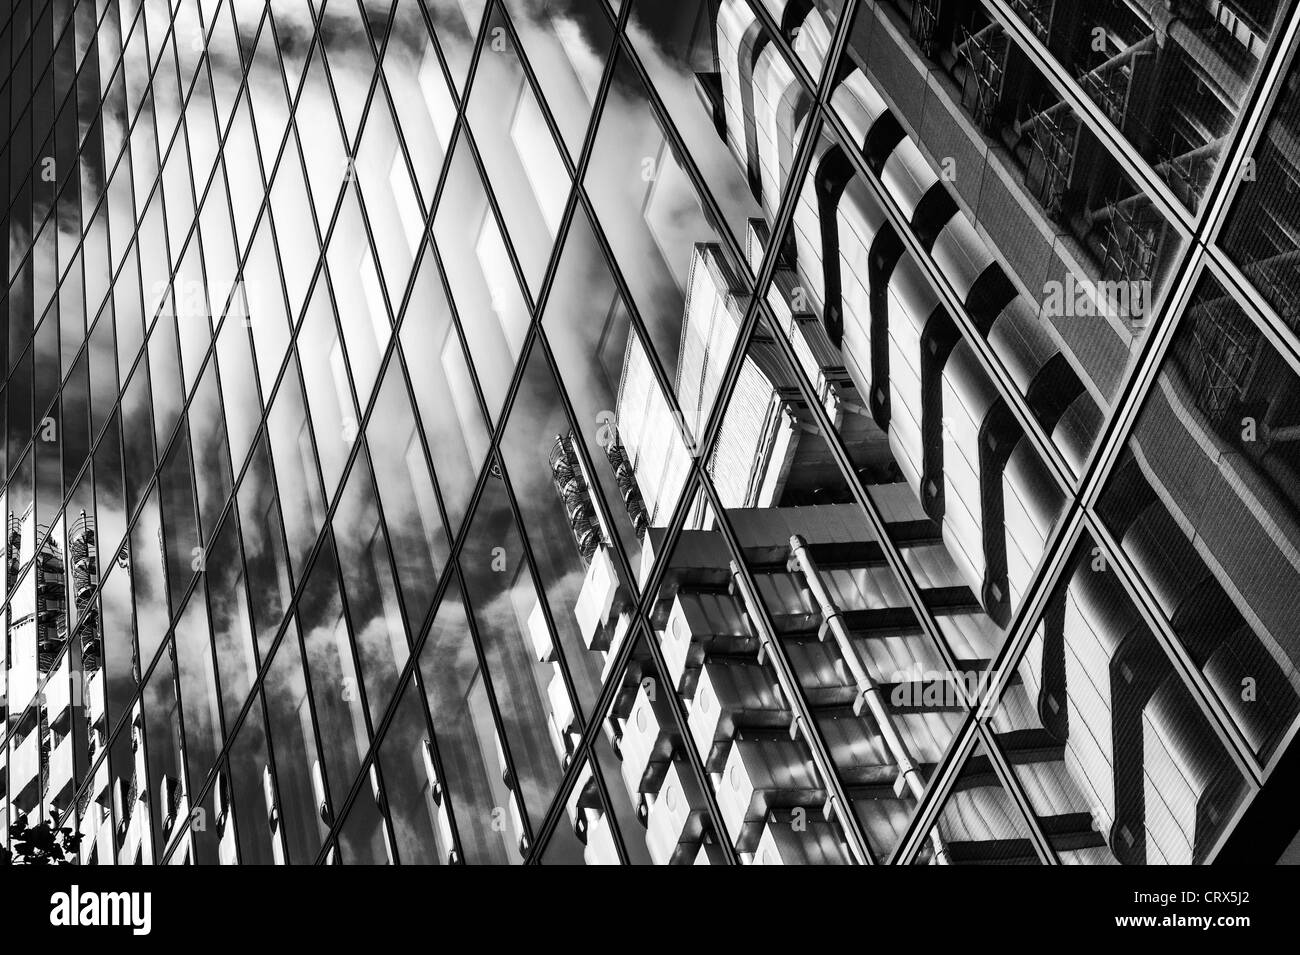 Édifice Willis avec la Lloyds building réflexions abstraites. Lime Street. Londres, Angleterre. Monochrome Banque D'Images